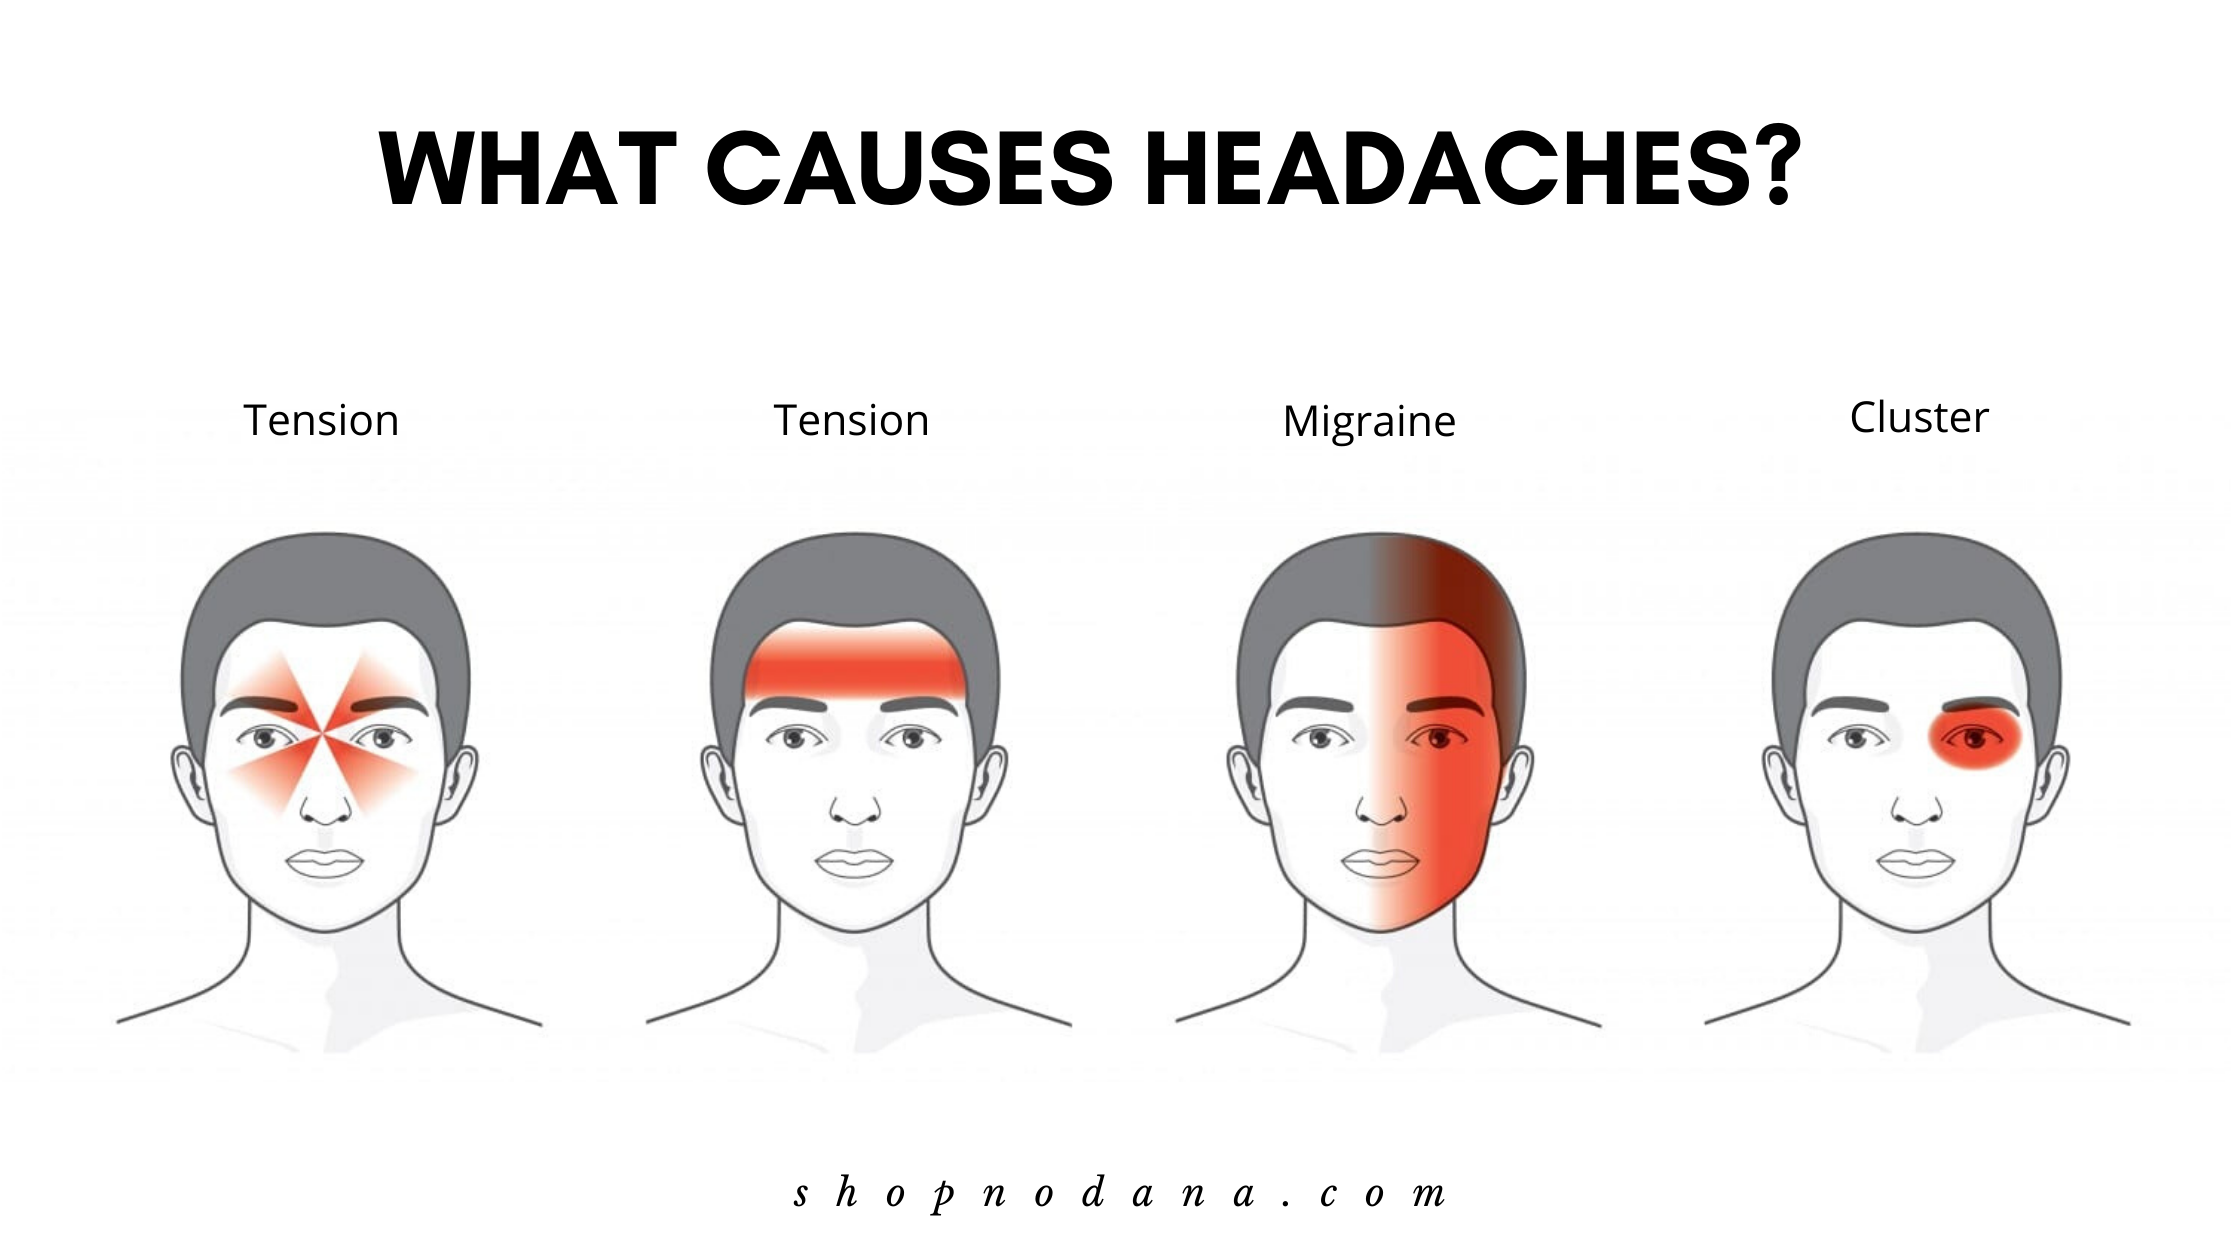 What causes headaches